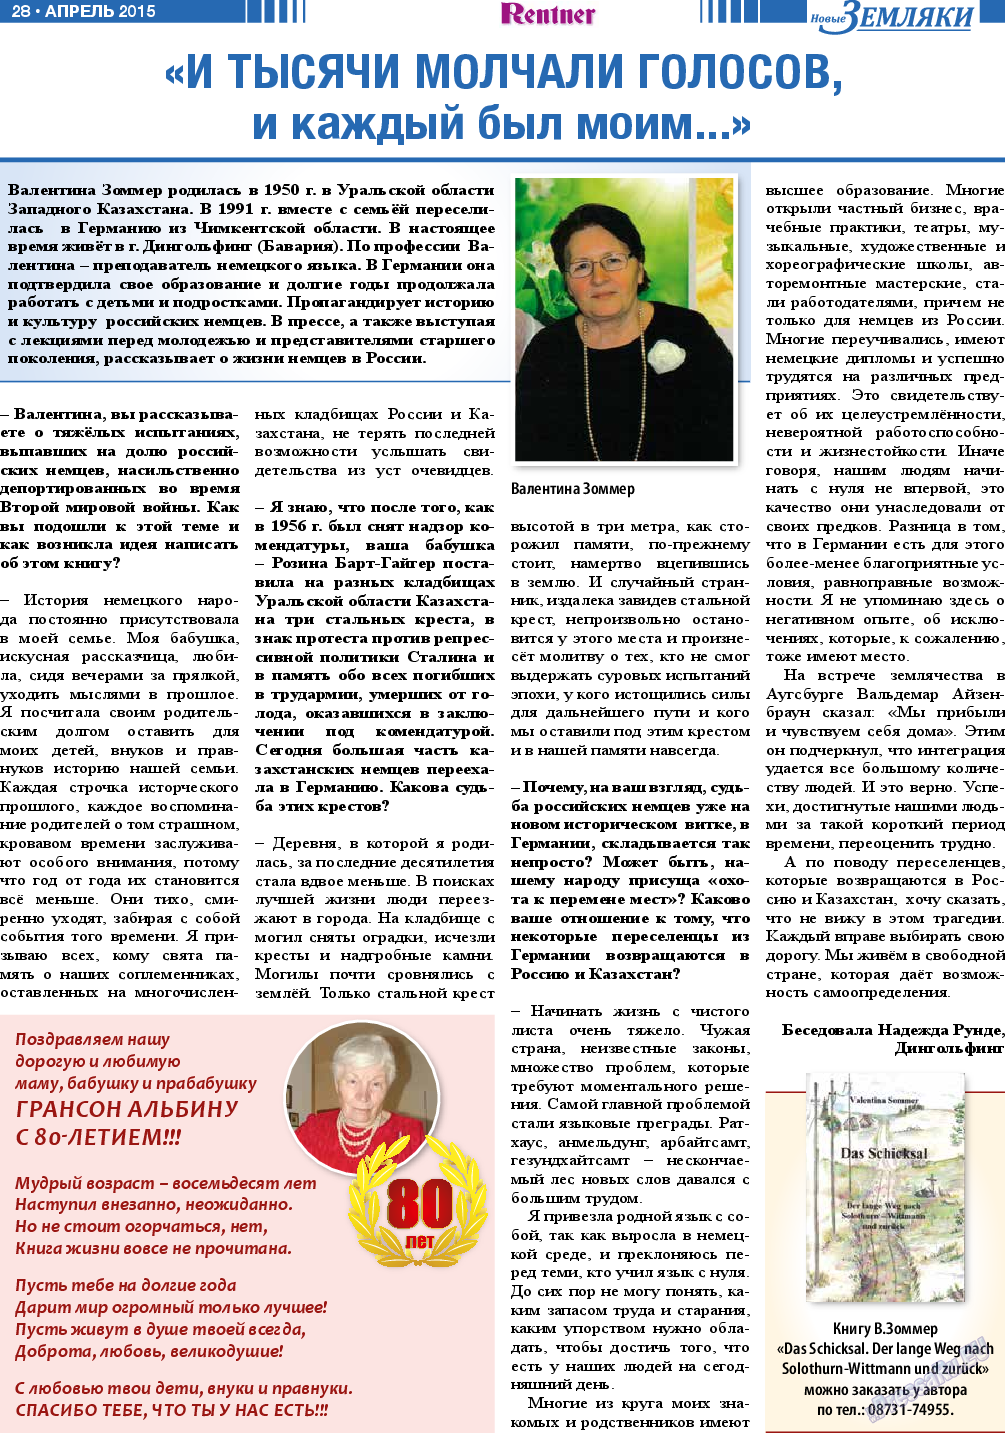 Новые Земляки, газета. 2015 №4 стр.28